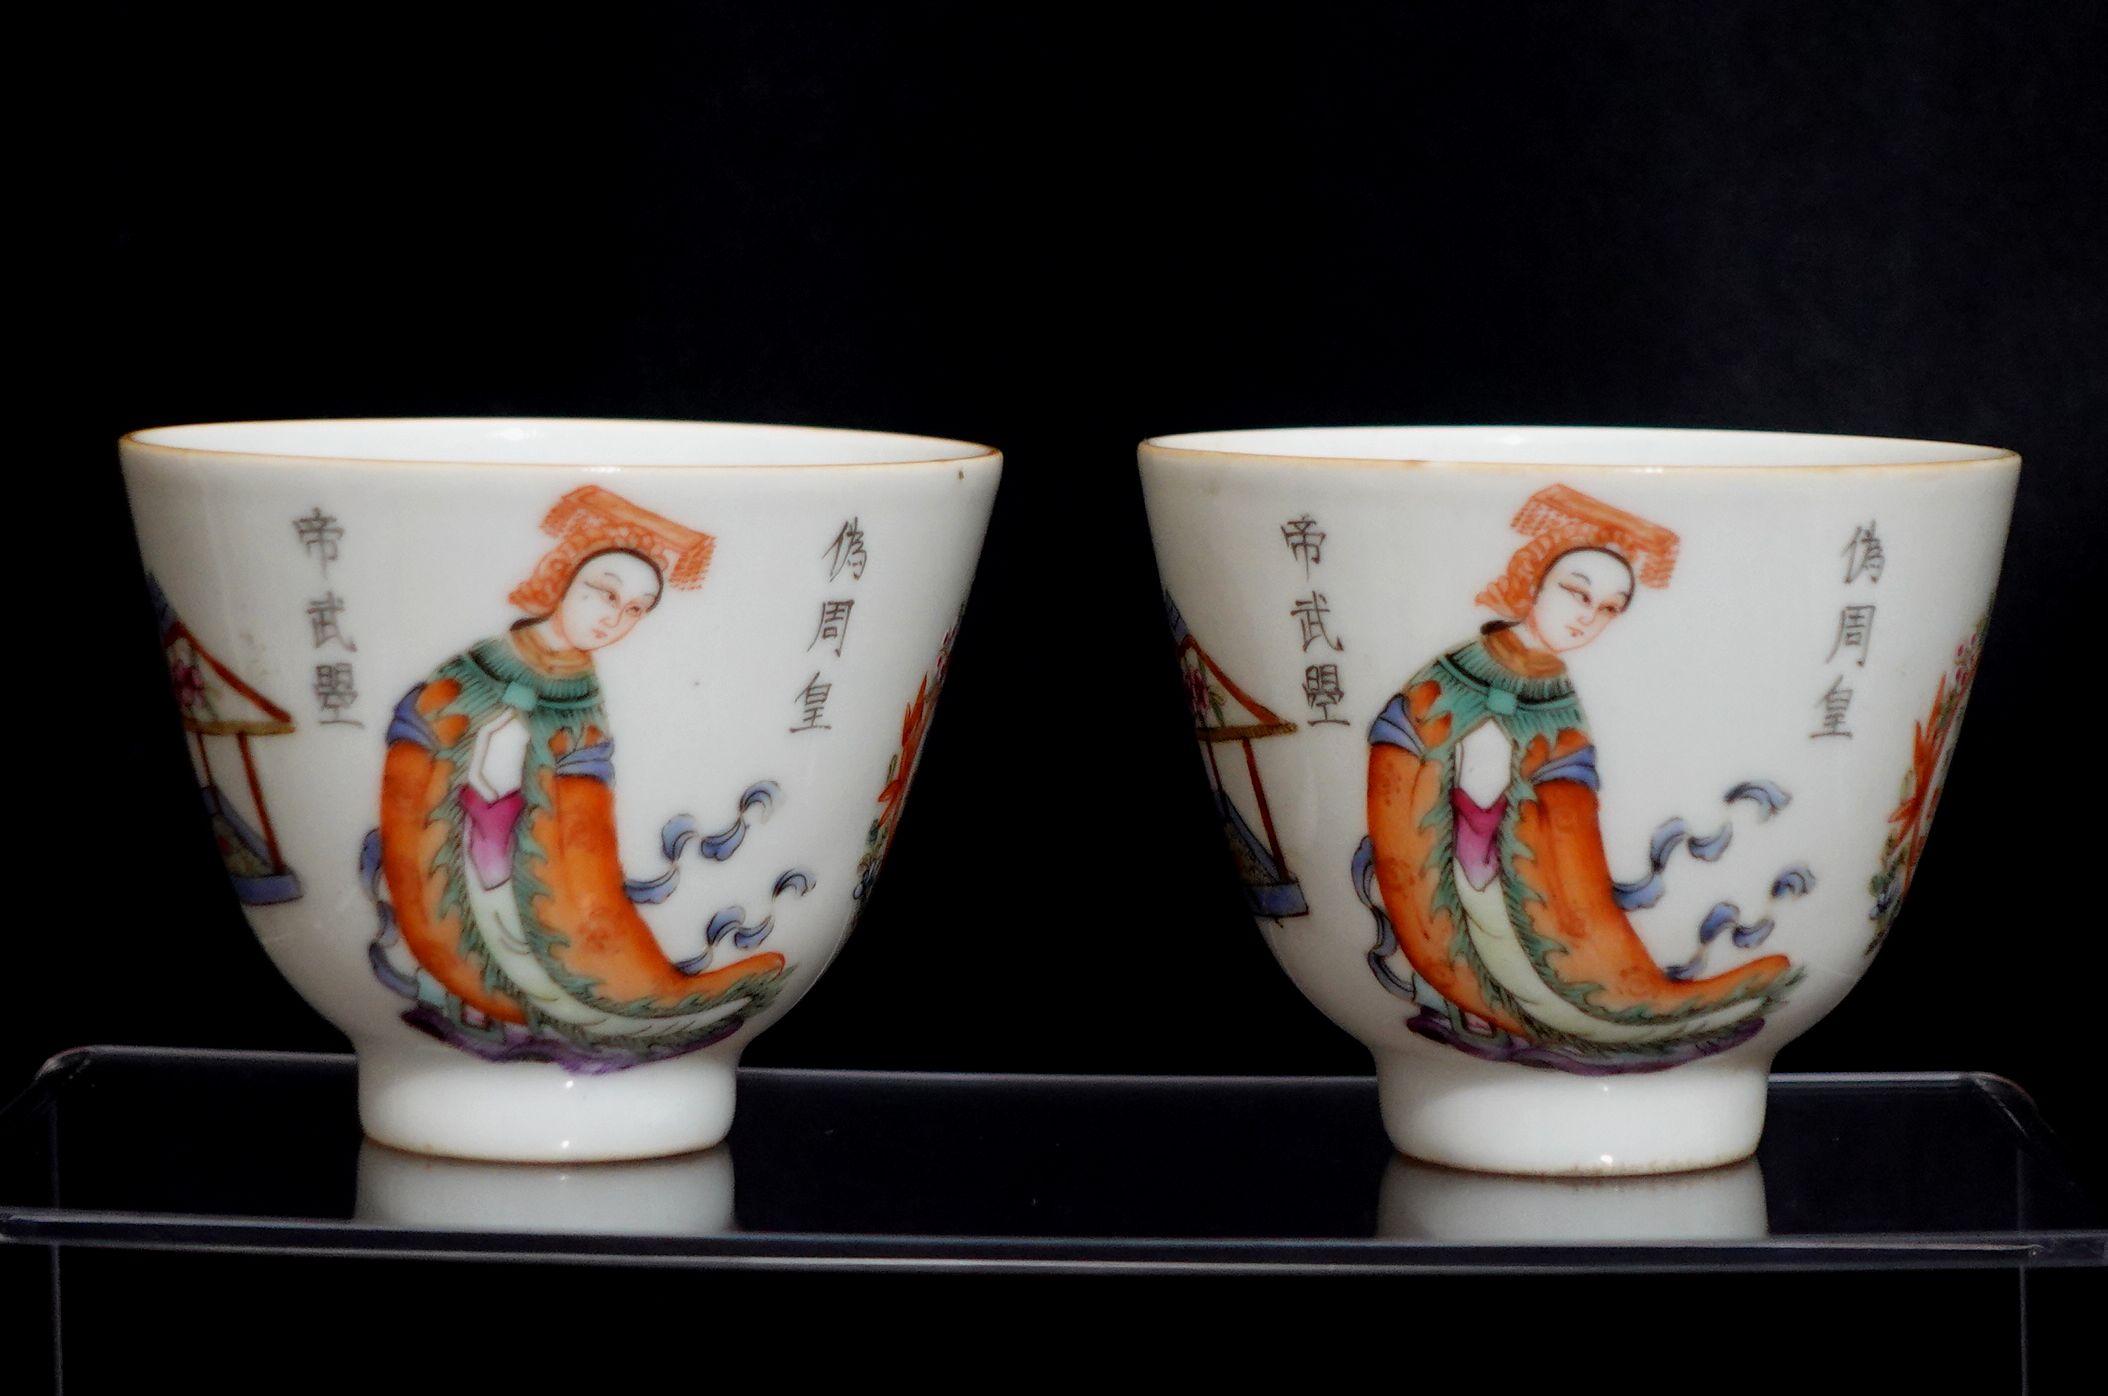 Paar Tassen aus chinesischem Porzellan Famille rose. Bogenschütze und Göttin Dekoration, guter Zustand
Maße: H:2 3/8in(6cm) W:3in(7.6cm).